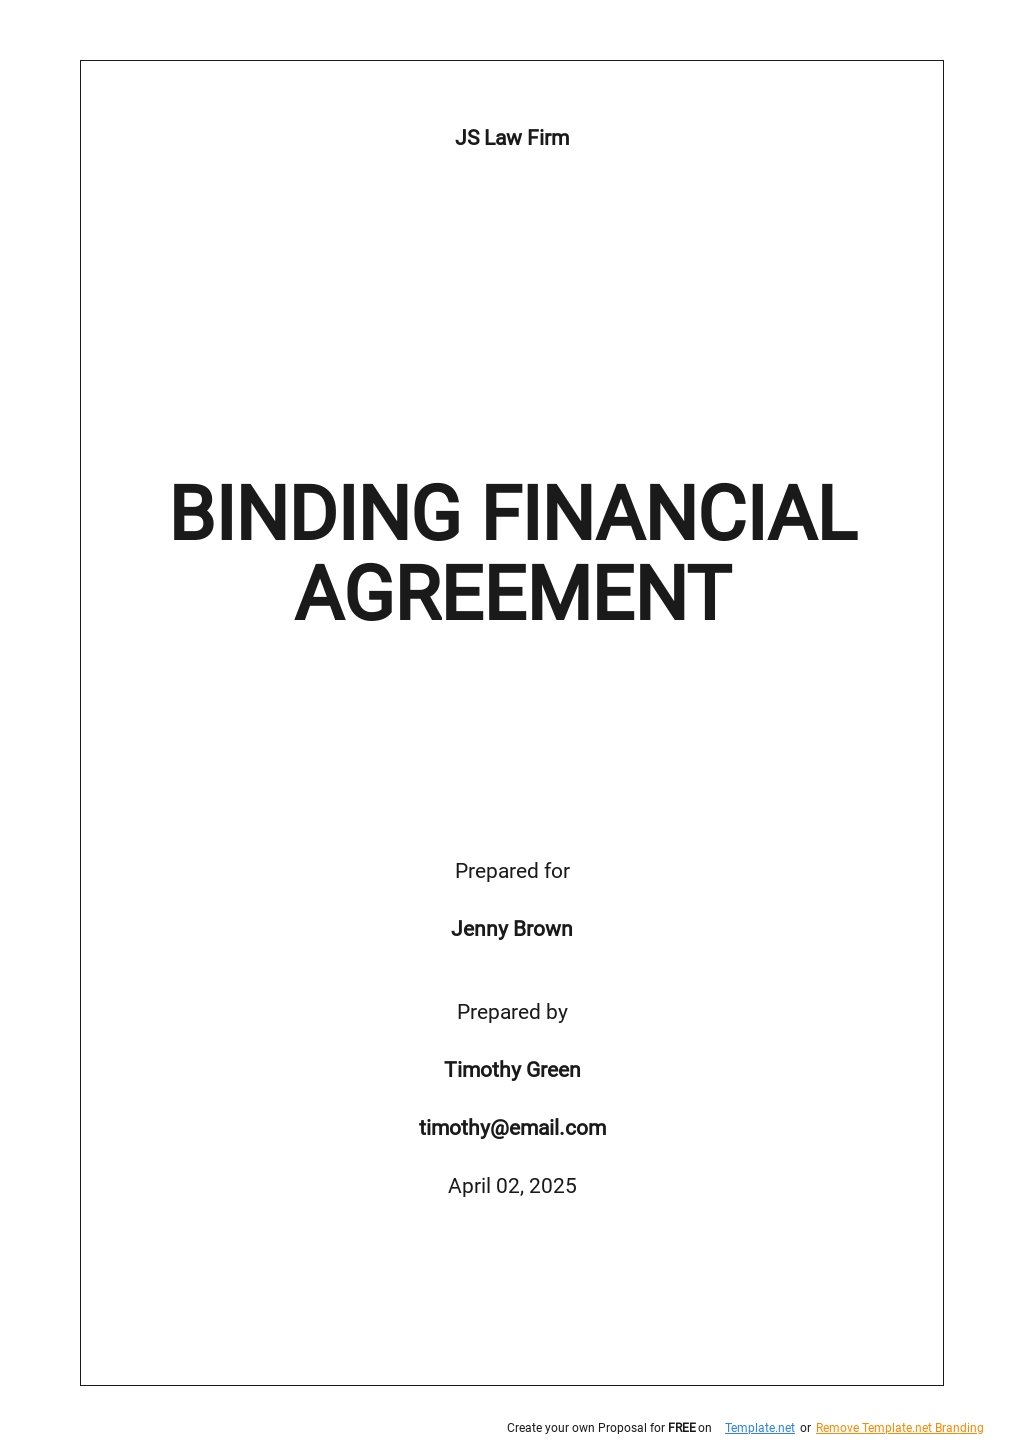 Financial Binding Agreement Template